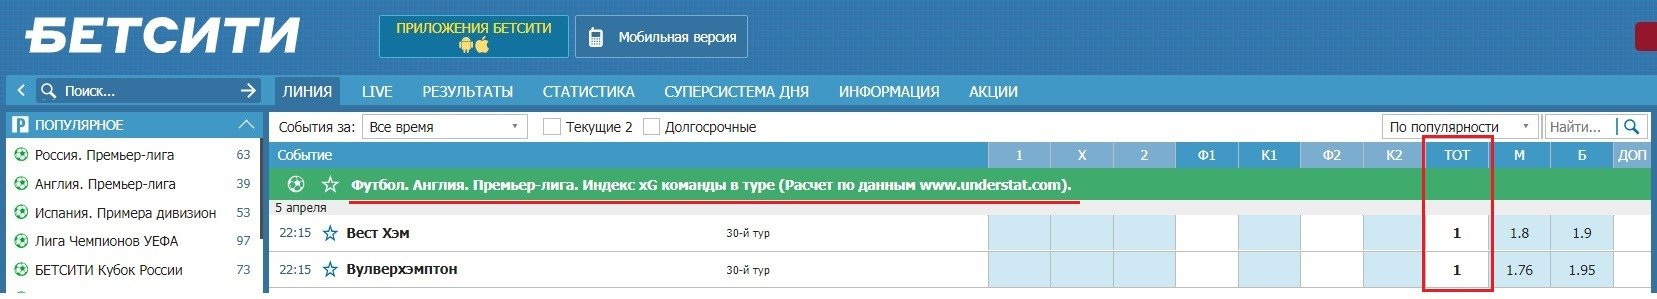 betcity ru stavki na indeks xG v ture futbol APL